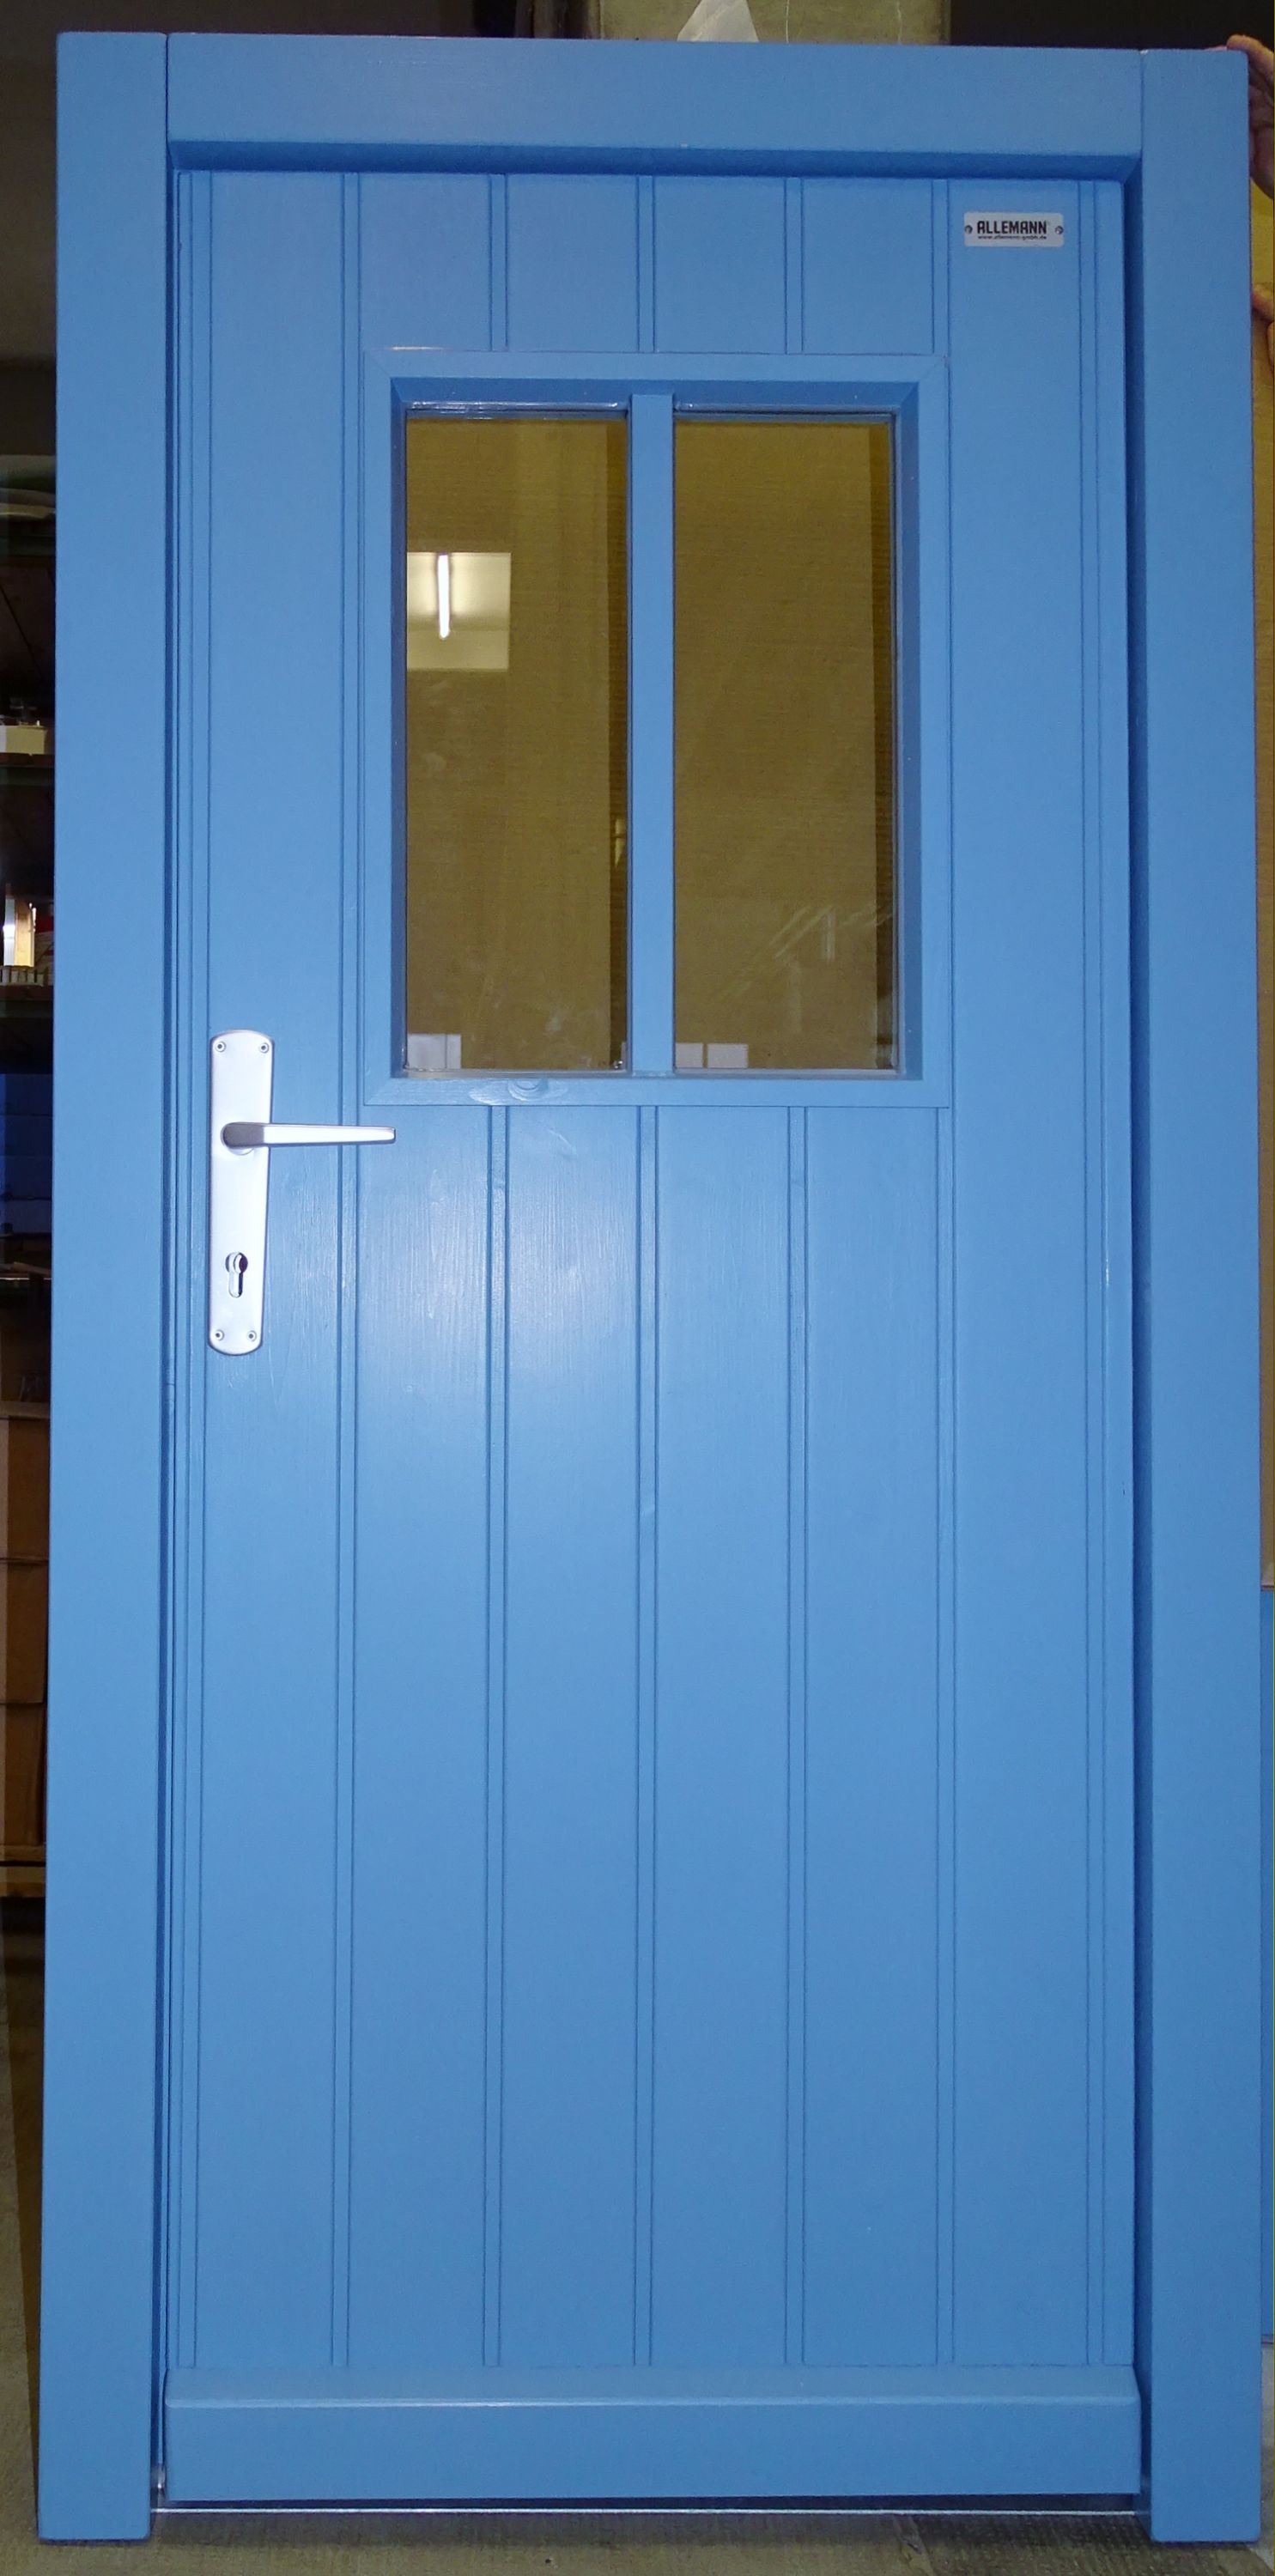 Nebeneingangstür Typ 890.2, DIN L nach innen öffnend, Fenster mit senkrechter Sprosse, RAL 5024 pastellblau.JPG